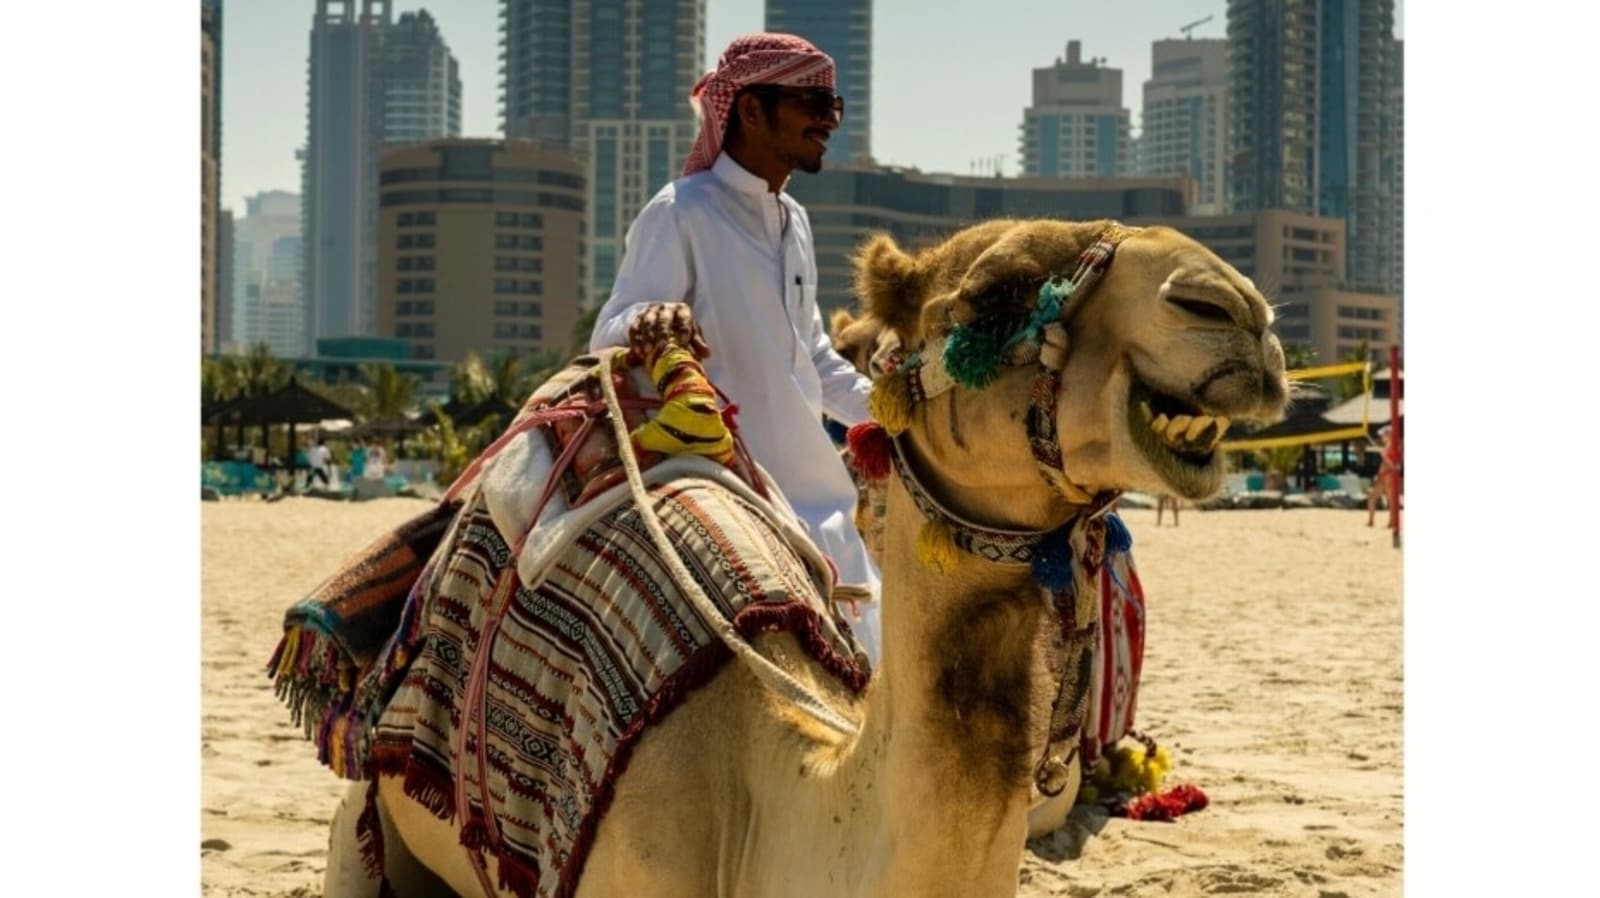 उड़ान की कीमत से लेकर आवास तक, भारत से दुबई की यात्रा करने वाले पर्यटकों के लिए इस गाइड को देखें